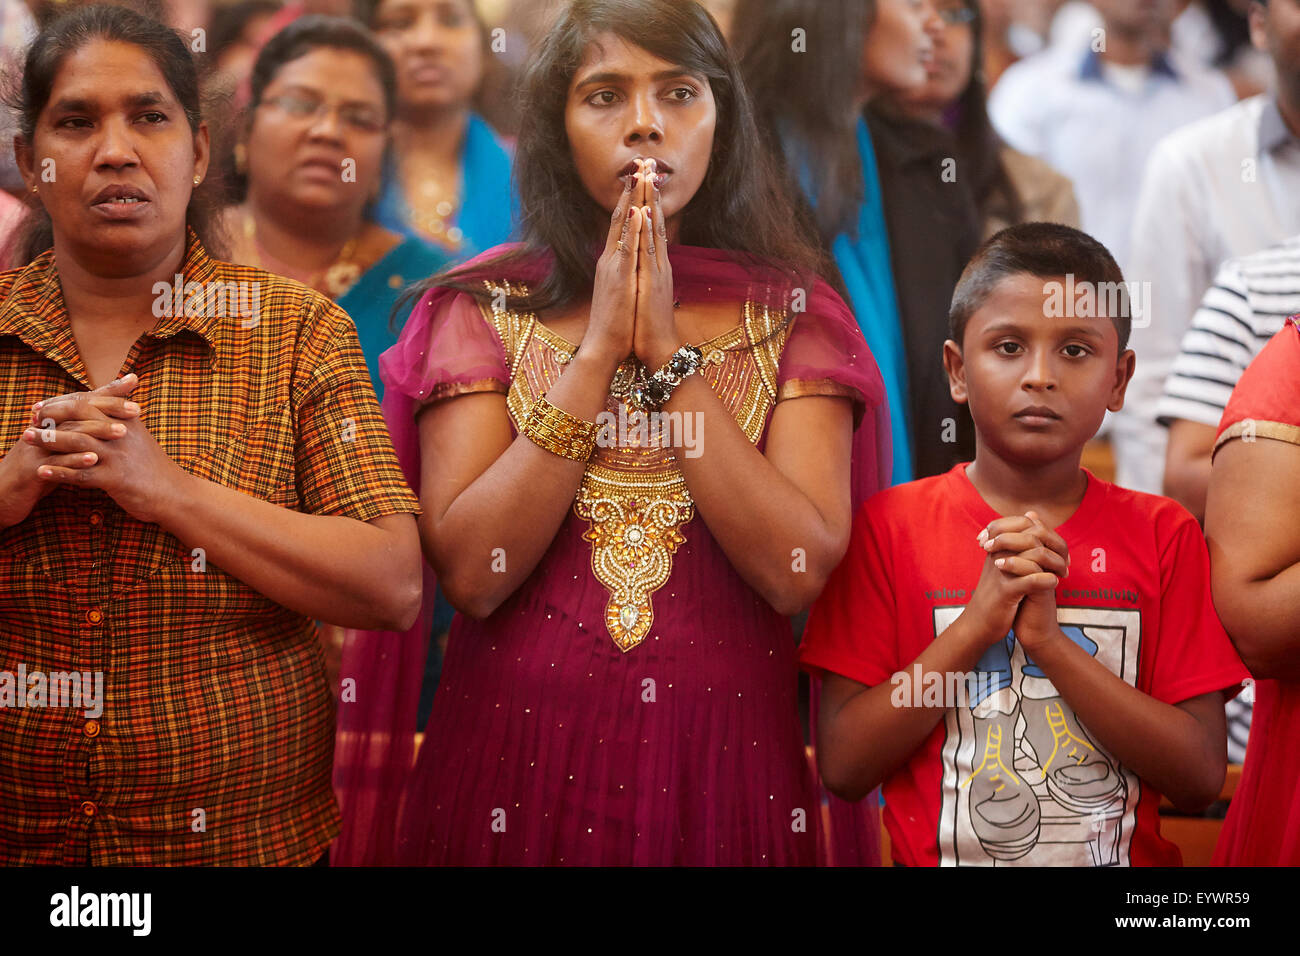 Tamil Catholic celebration, Antony, France, Europe Stock Photo